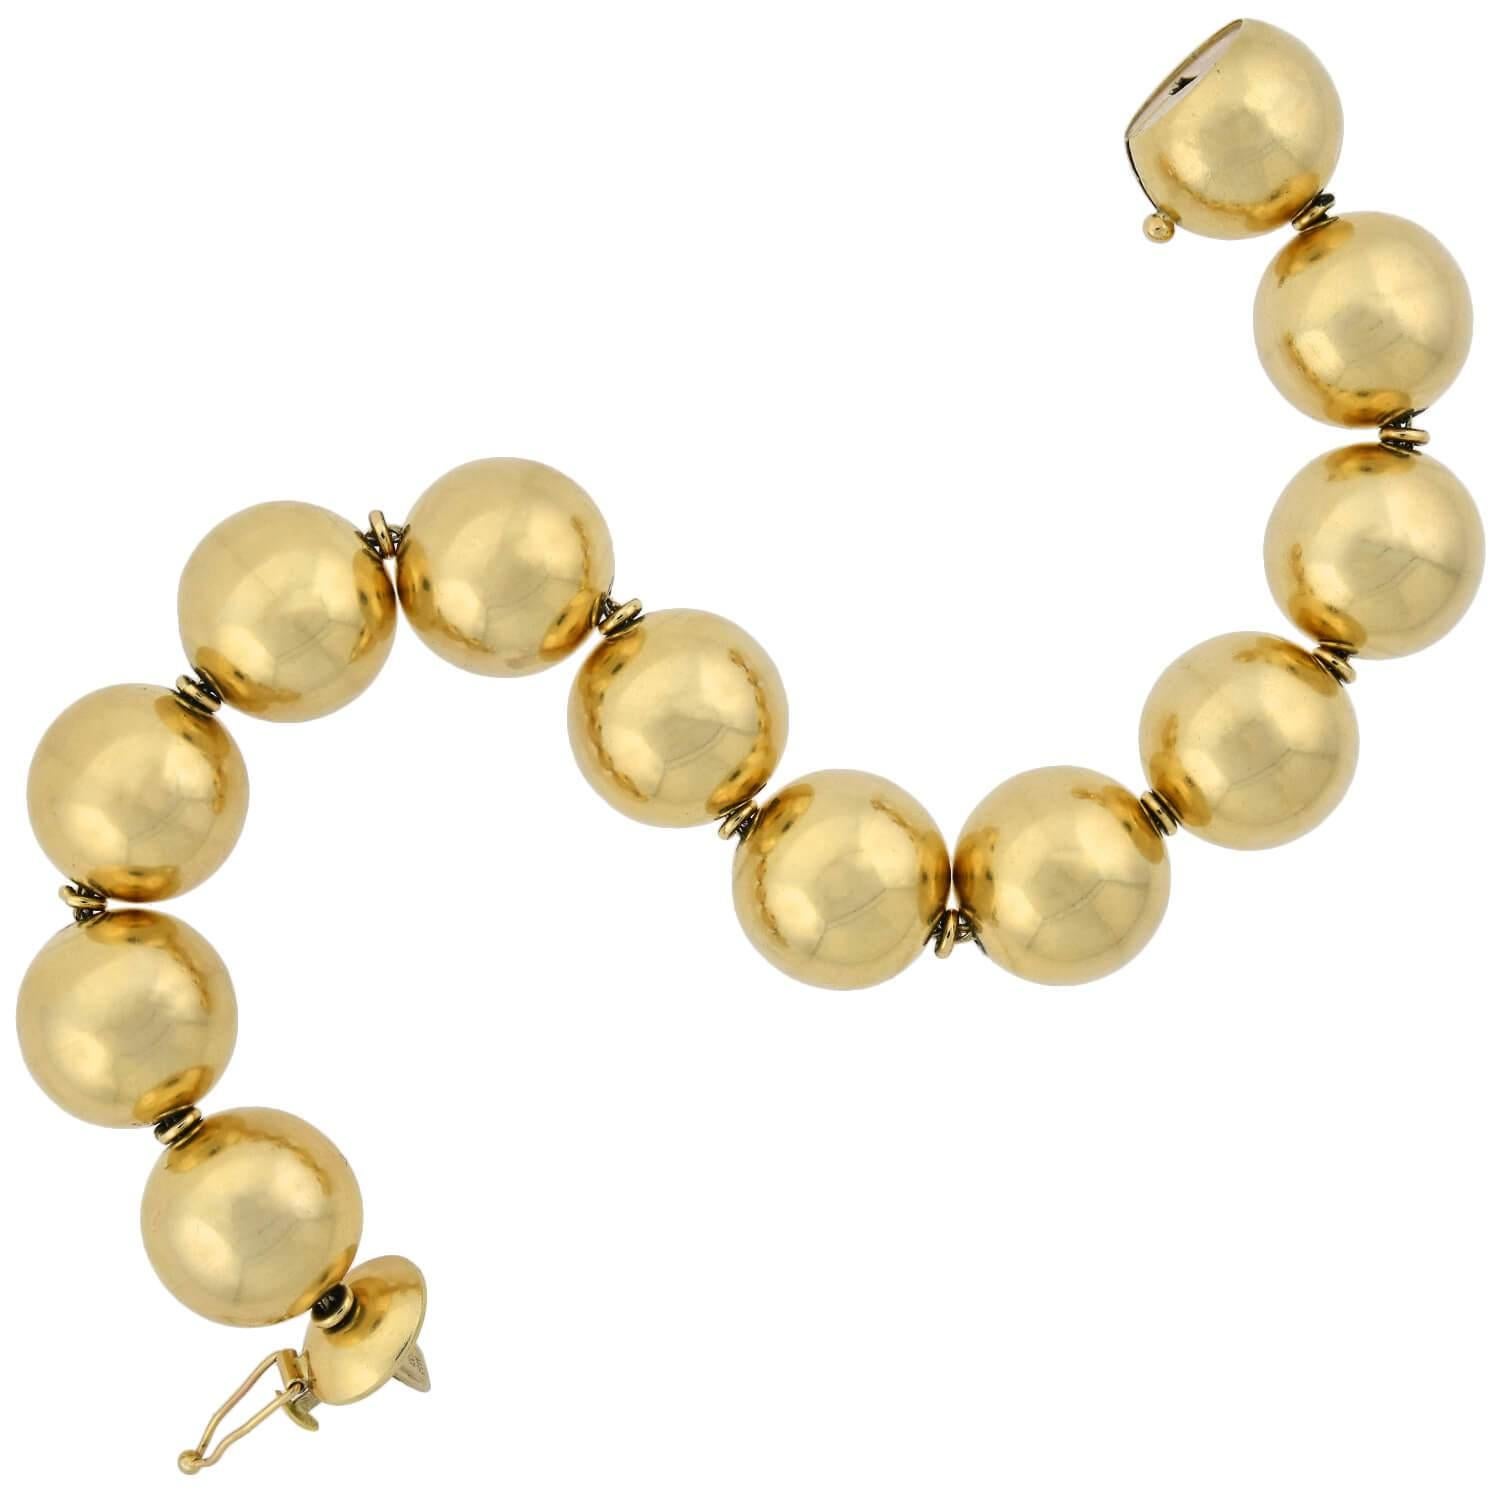 Un superbe bracelet vintage en perles d'or des années 1950 ! Réalisé en or jaune 14 carats, ce bracelet simple mais accrocheur est composé de 12 boules d'or poli uniment, qui forment un motif droit mais flexible qui s'enroule autour du poignet. Les